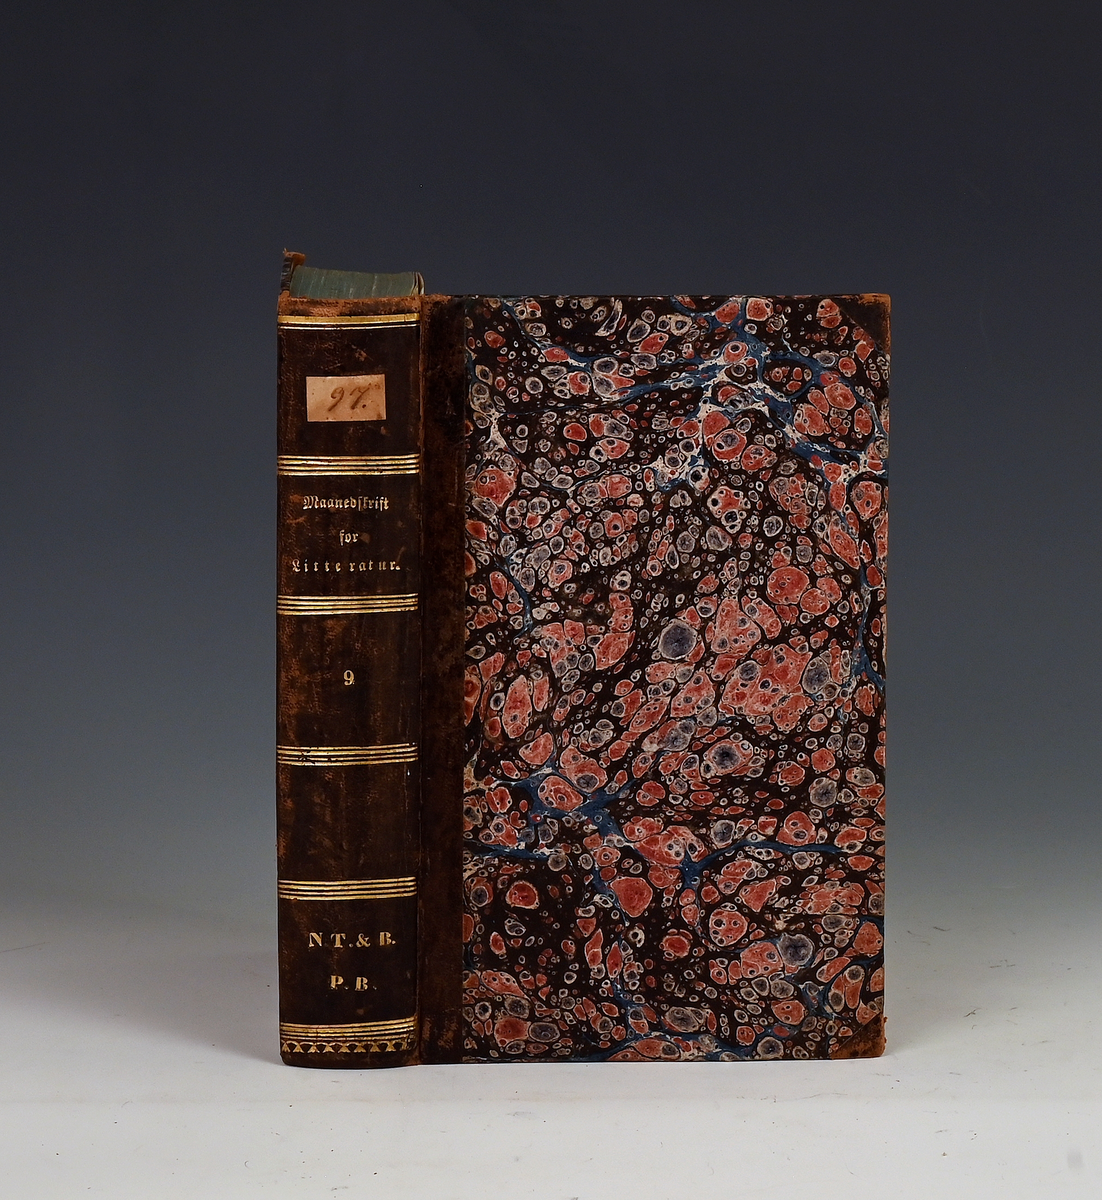 Maanedsskrift for litteratur. Niende bind. Kbhv. 1833.